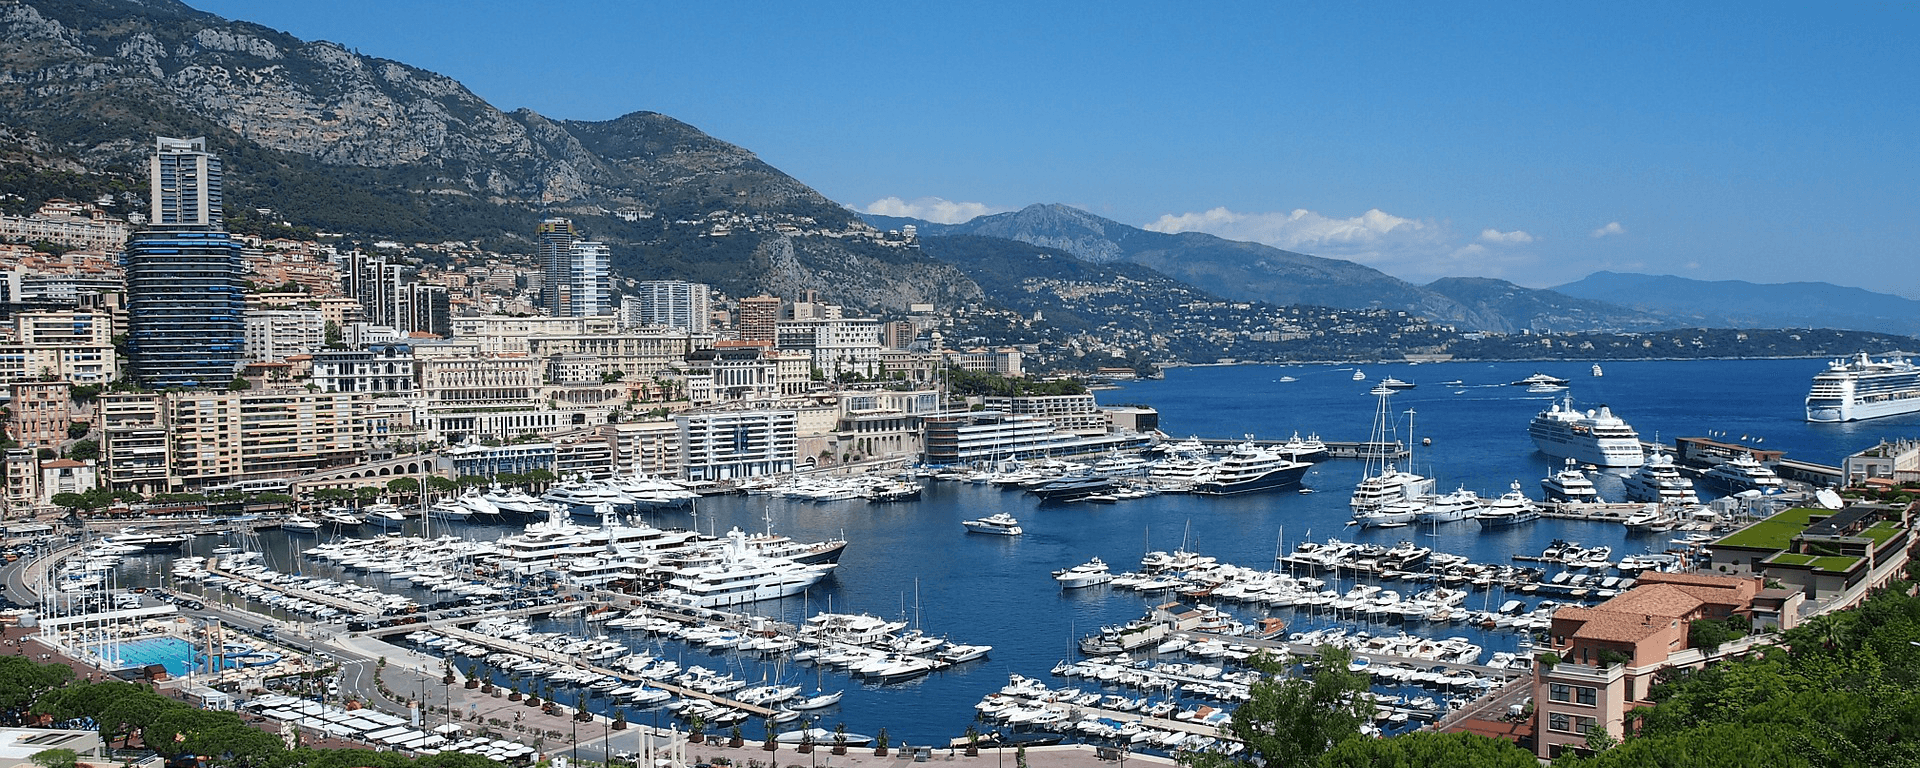 Im Hafen von Monaco liegen viele millionenschwere Luxusyachten.